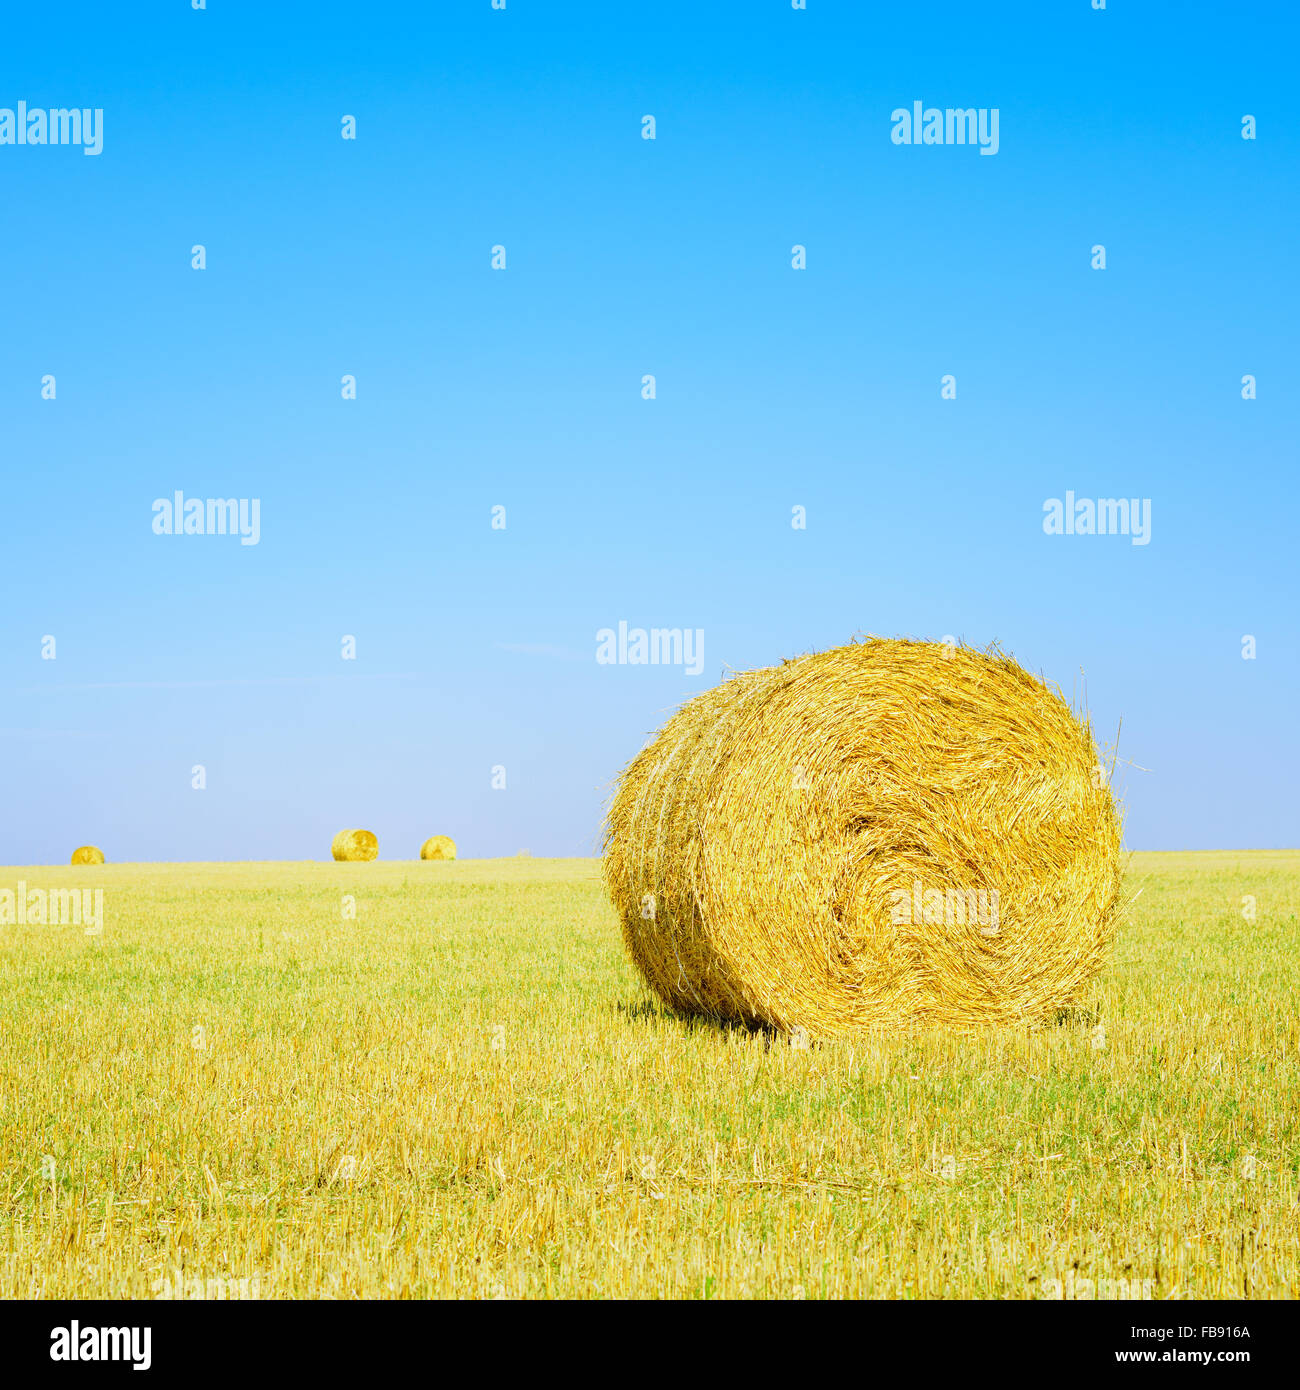 Rouleau de foin, ciel bleu et jaune en été sur le terrain. La toscane, italie Banque D'Images